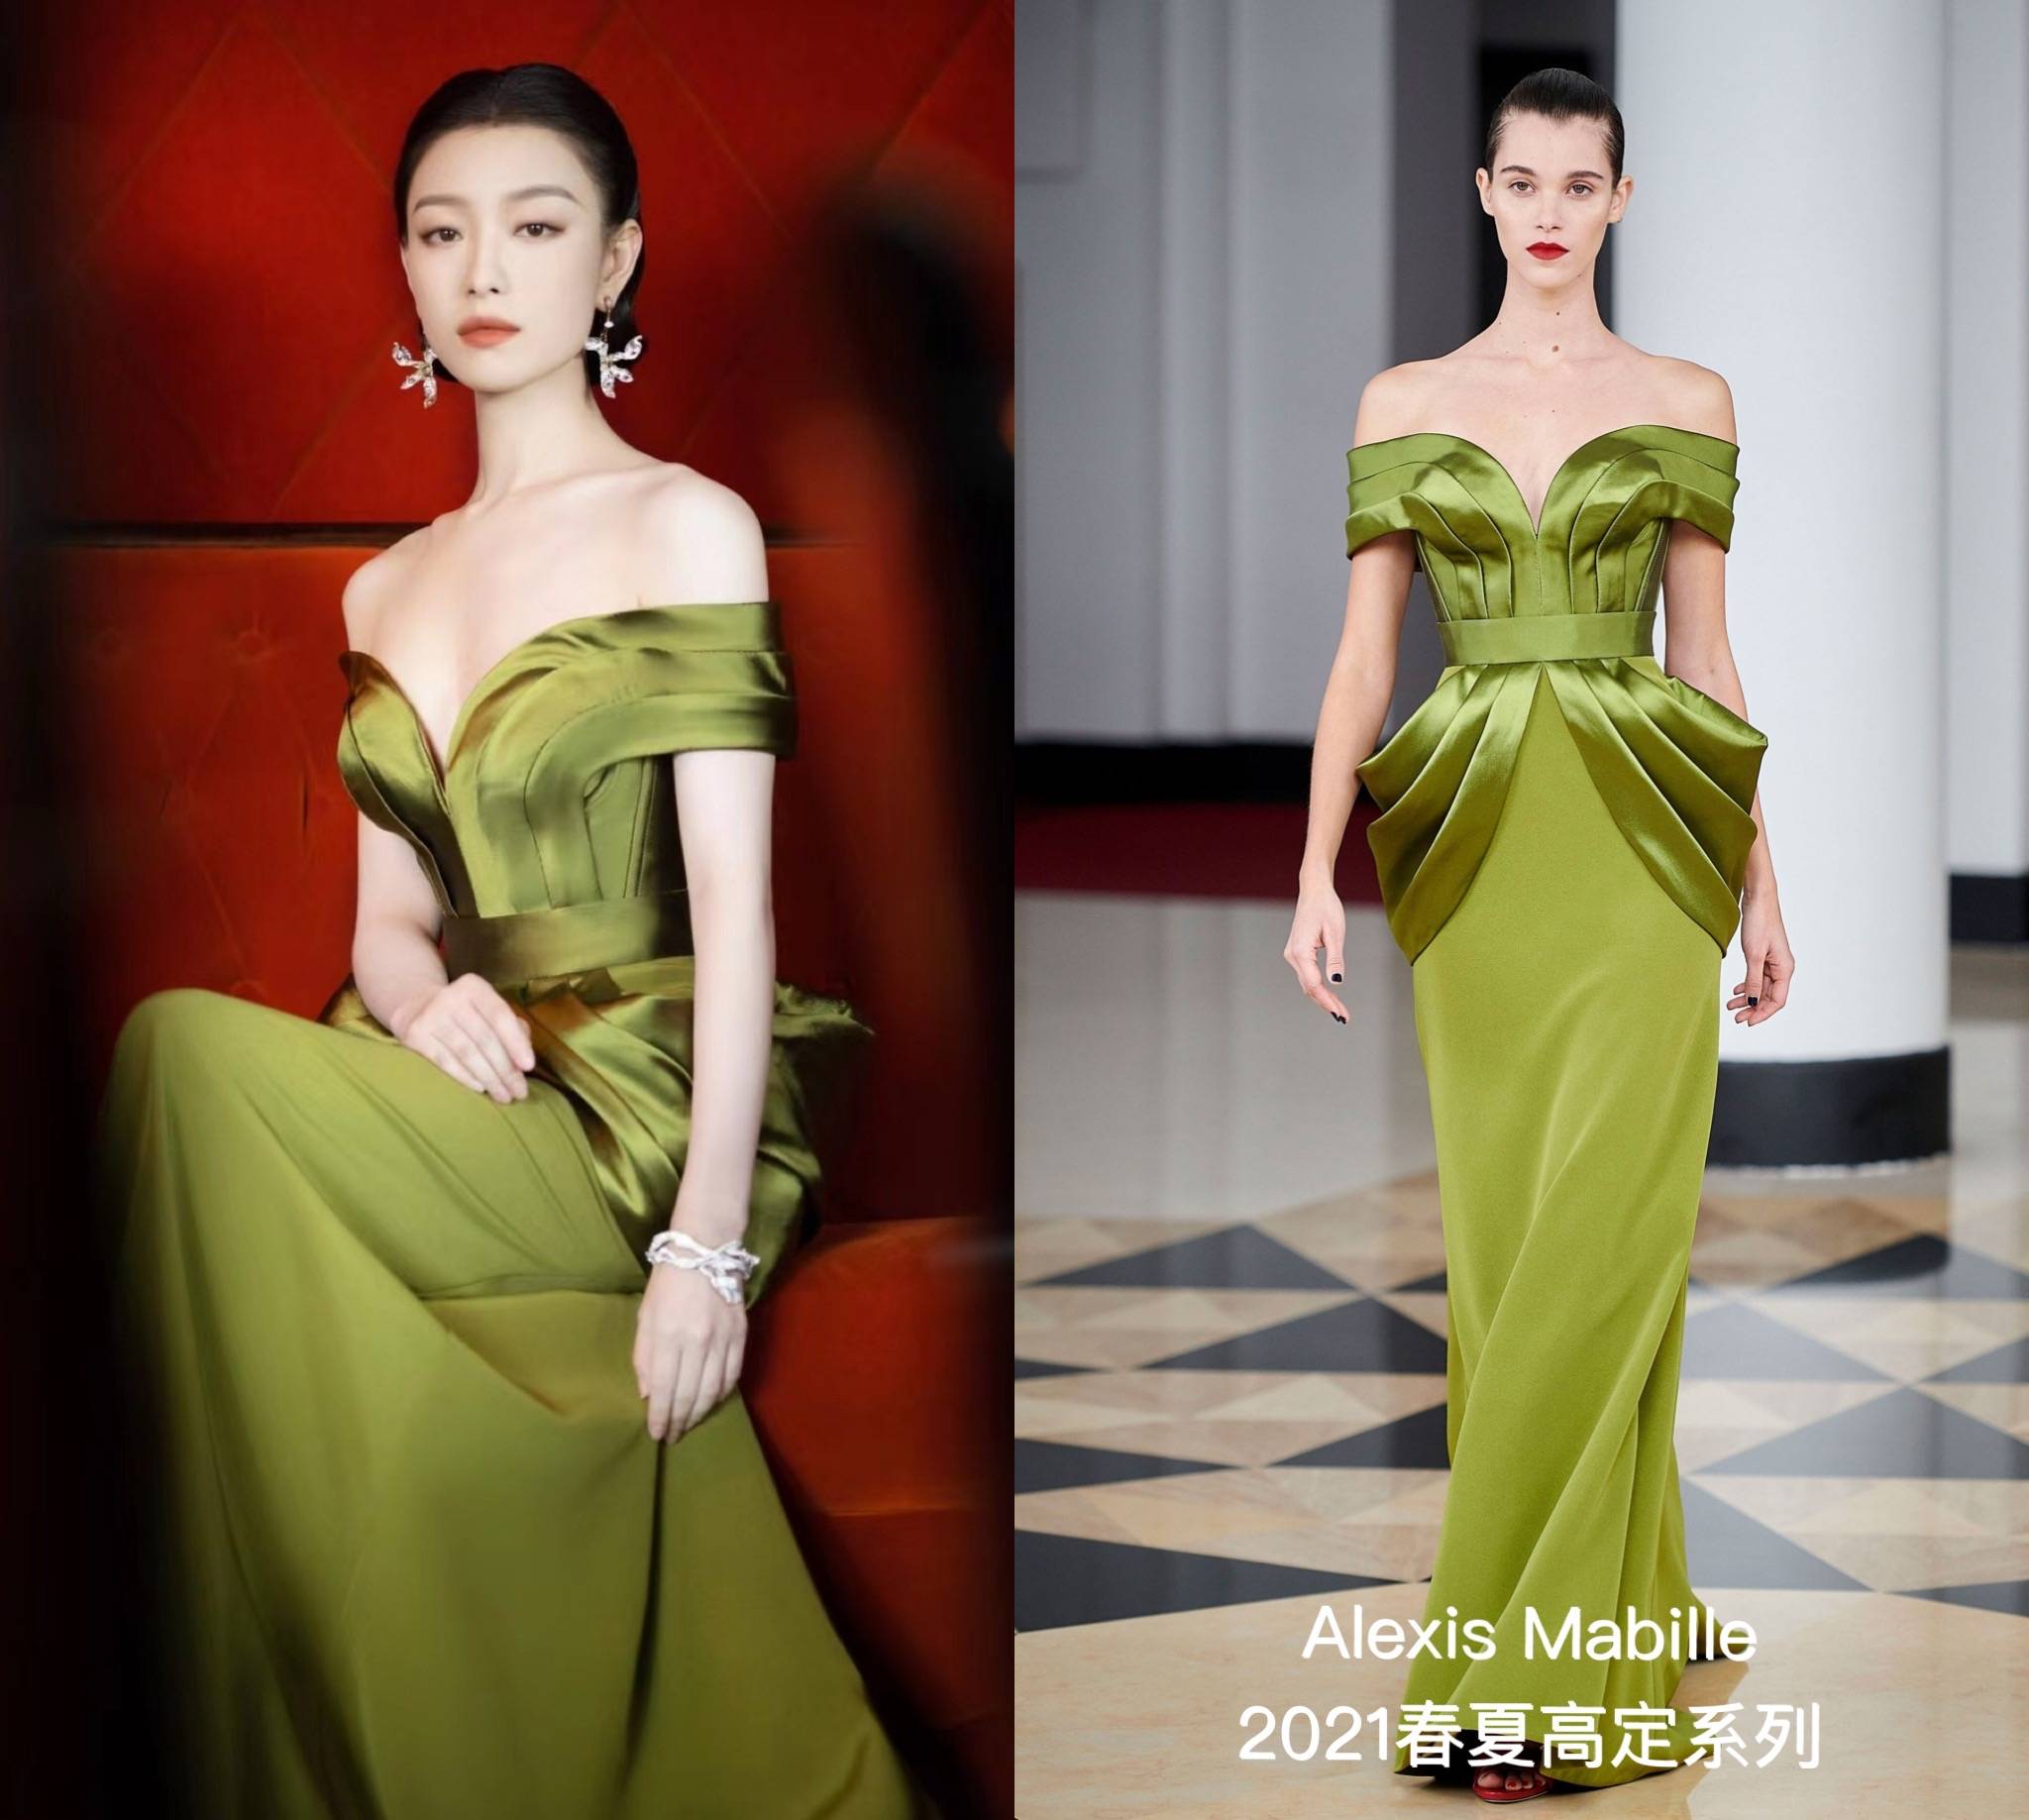 Á hậu Kim Duyên lộng lẫy trong váy dạ lấy ý tưởng từ các vì sao - Báo điện  tử VnMedia - Tin nóng Việt Nam và thế giới